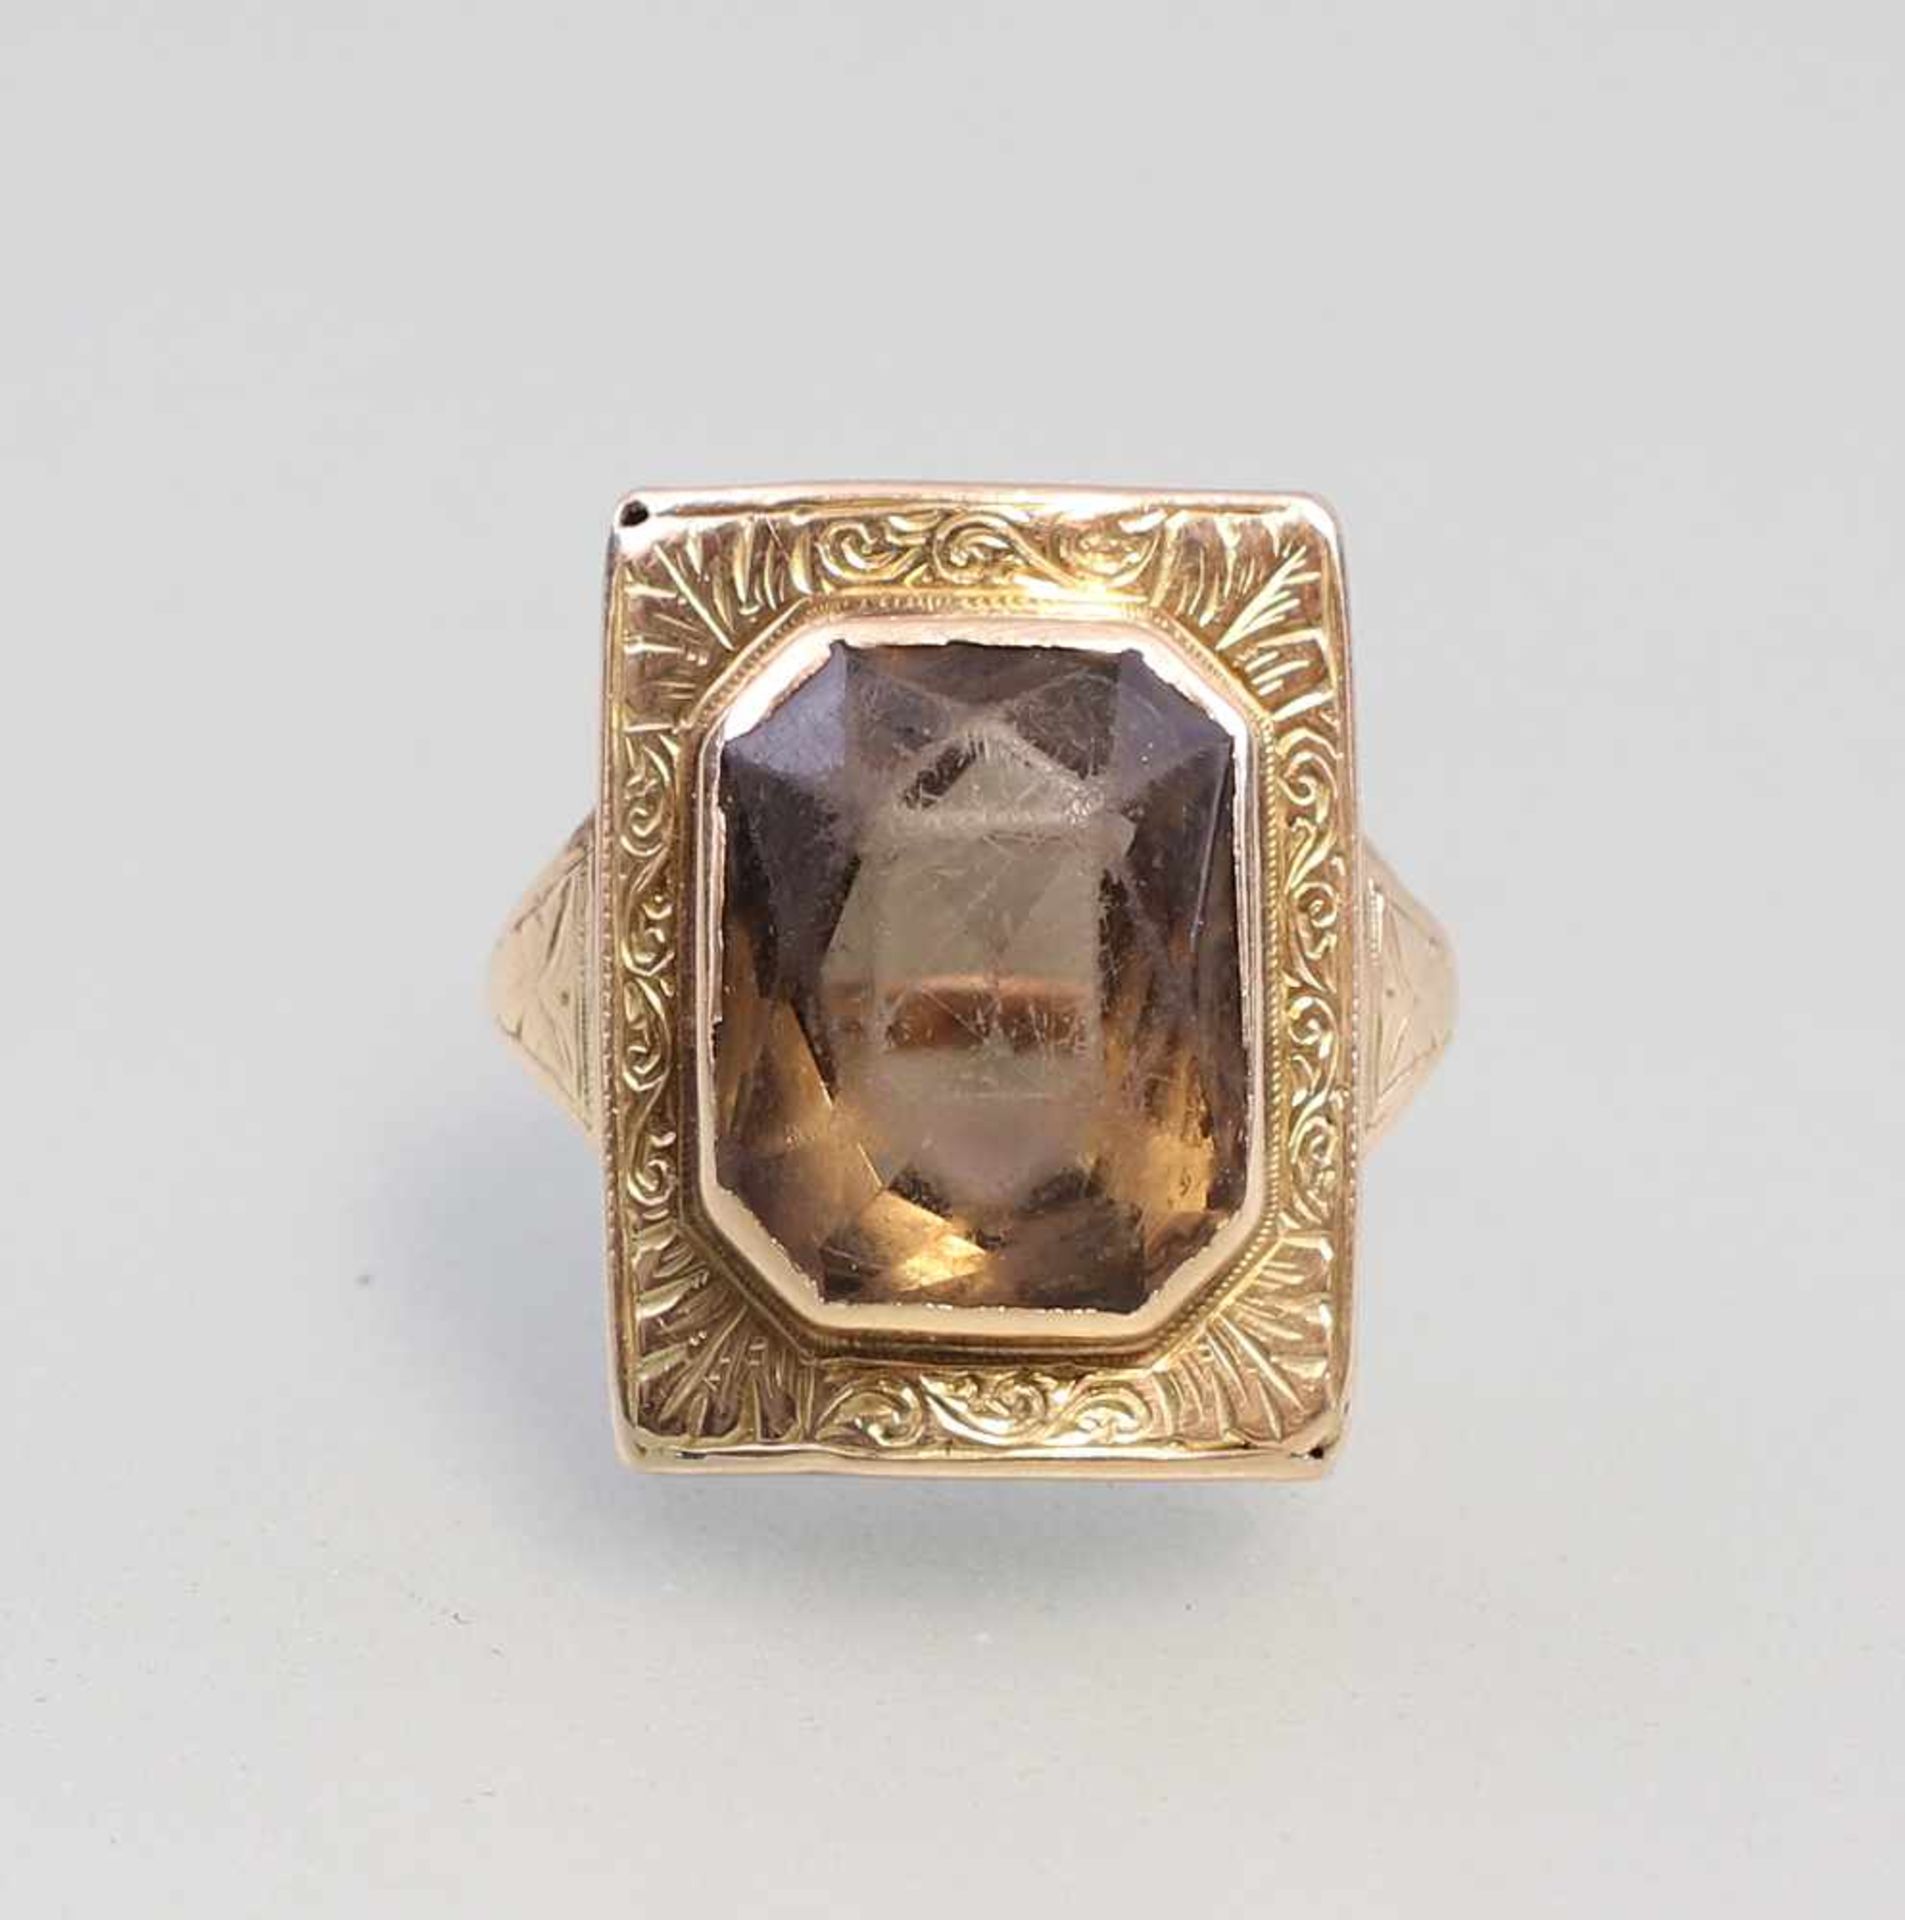 Rauchquarz-Ring. 19.Jh., 585er GG, 6,43g, Handarbeit, rechteckiger, fein ziseliert mit Ornamenten - Bild 2 aus 5